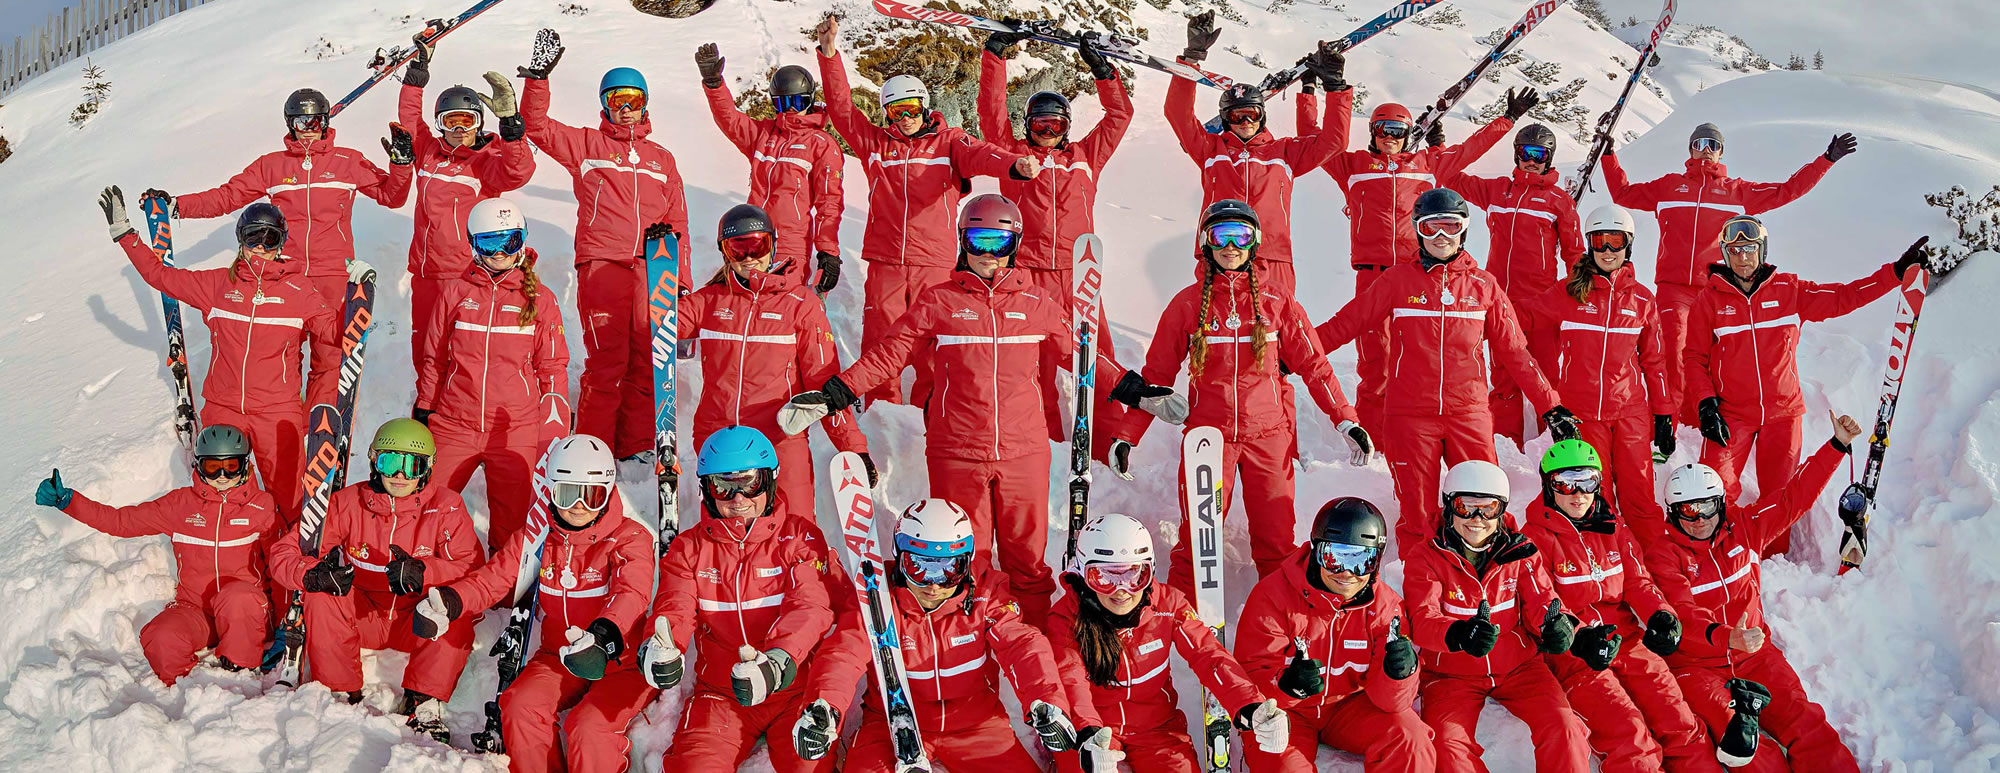 Das Team der Skischule Kleinarl by Schernthaner in Ski amadé, Österreich